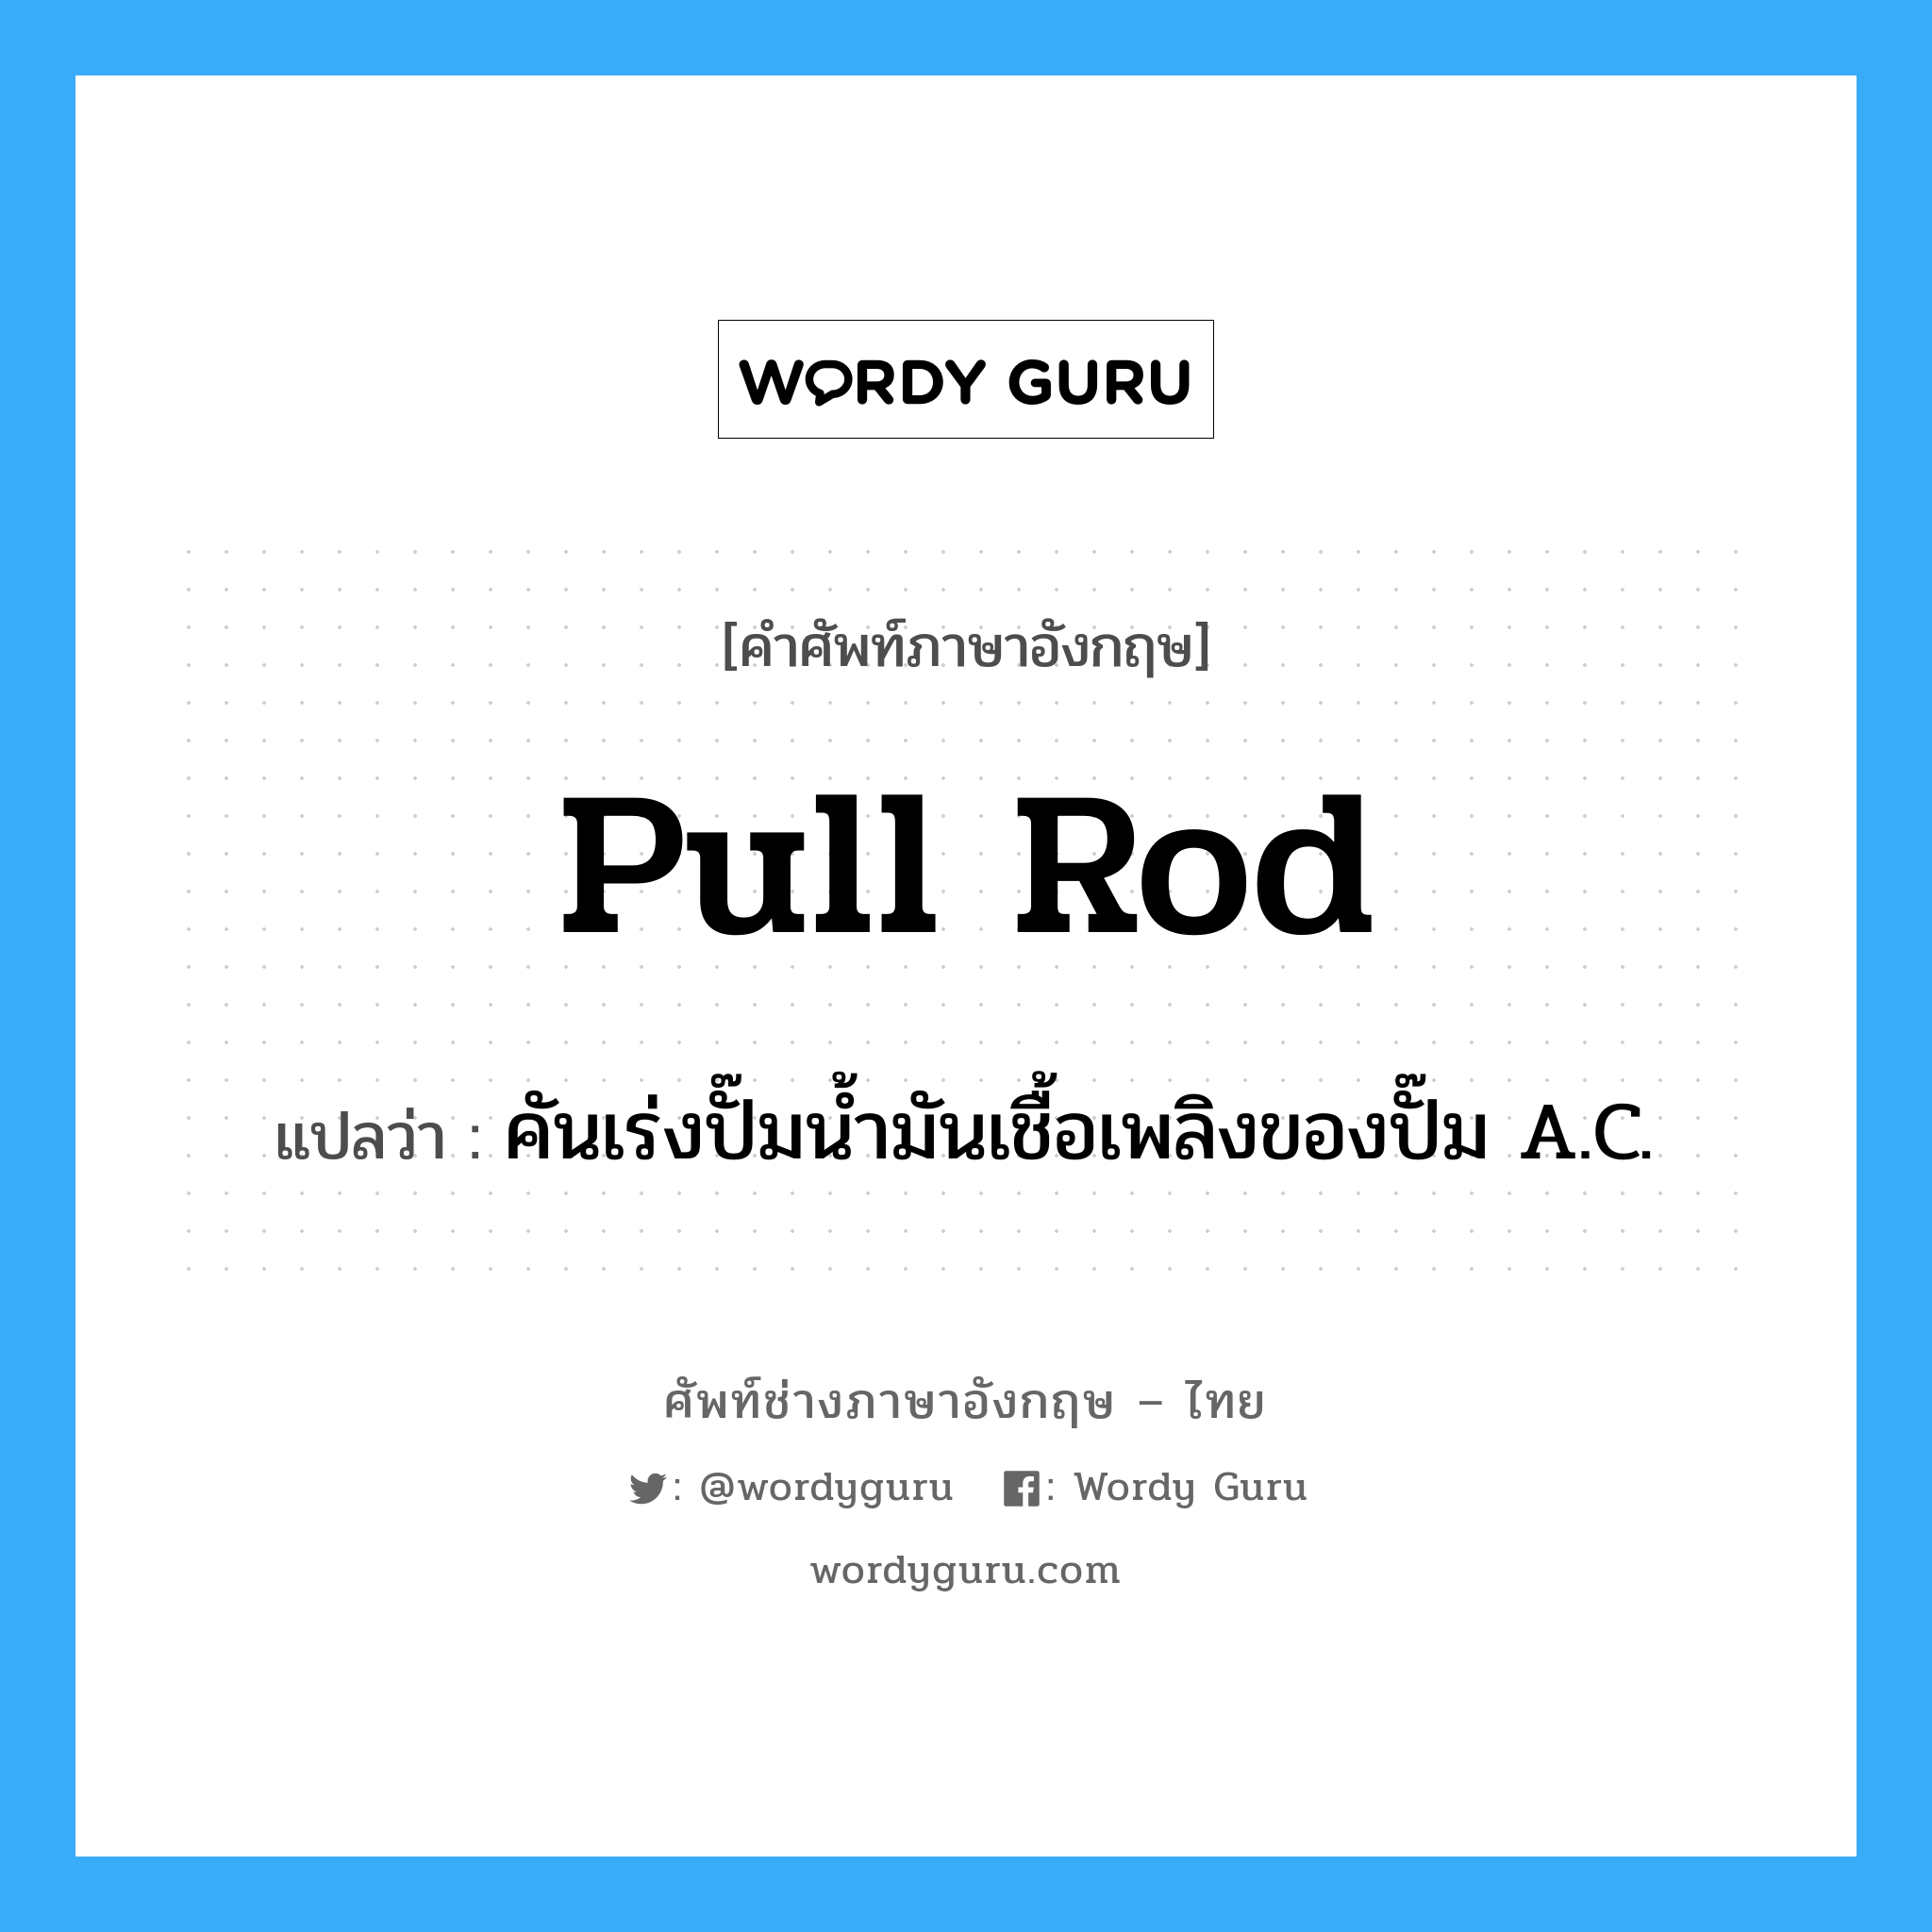 pull rod แปลว่า?, คำศัพท์ช่างภาษาอังกฤษ - ไทย pull rod คำศัพท์ภาษาอังกฤษ pull rod แปลว่า คันเร่งปั๊มน้ำมันเชื้อเพลิงของปั๊ม A.C.